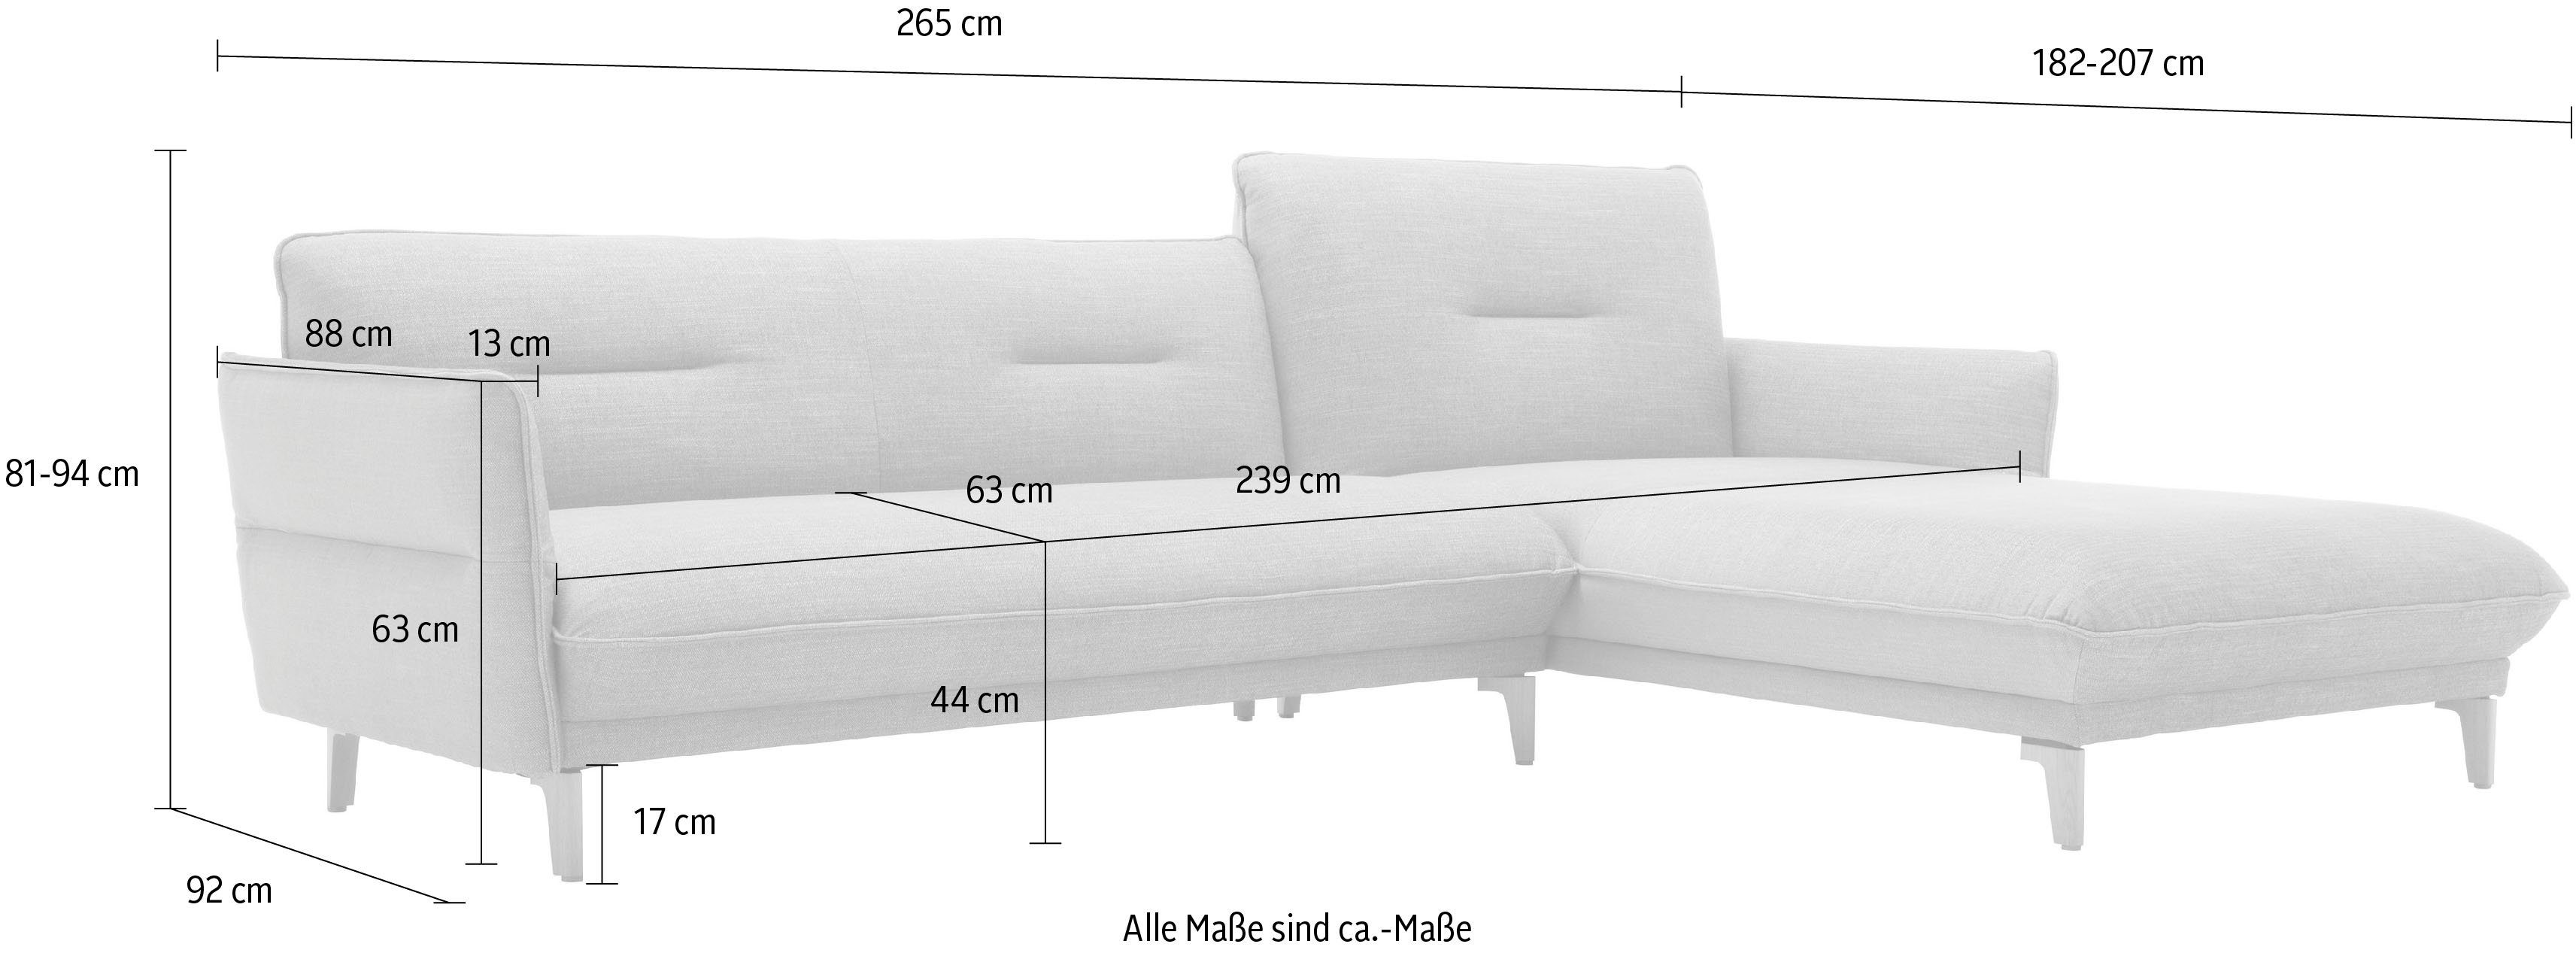 Rücken hoher - 265 062 cm mit 72 ozeanblau hs.430, hülsta Neigefunktion, Breite Ecksofa Recamiere sofa